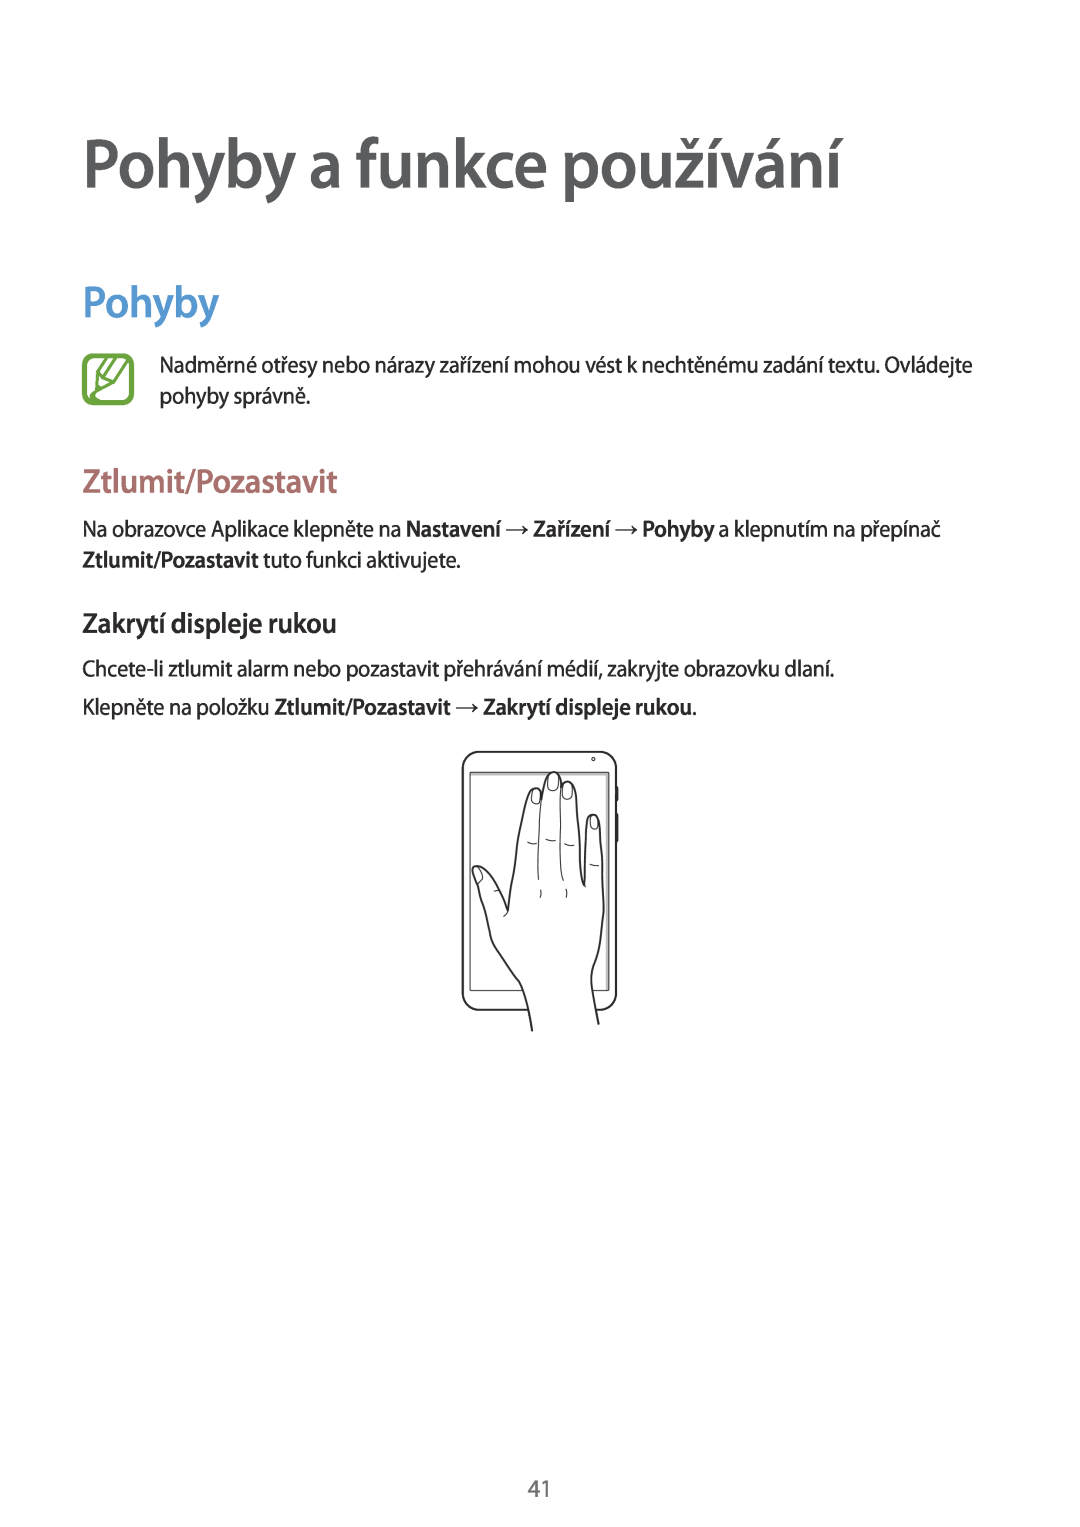 Samsung SM-T700NHAAAUT, SM-T700NZWAXEO manual Pohyby a funkce používání, Ztlumit/Pozastavit, Zakrytí displeje rukou 